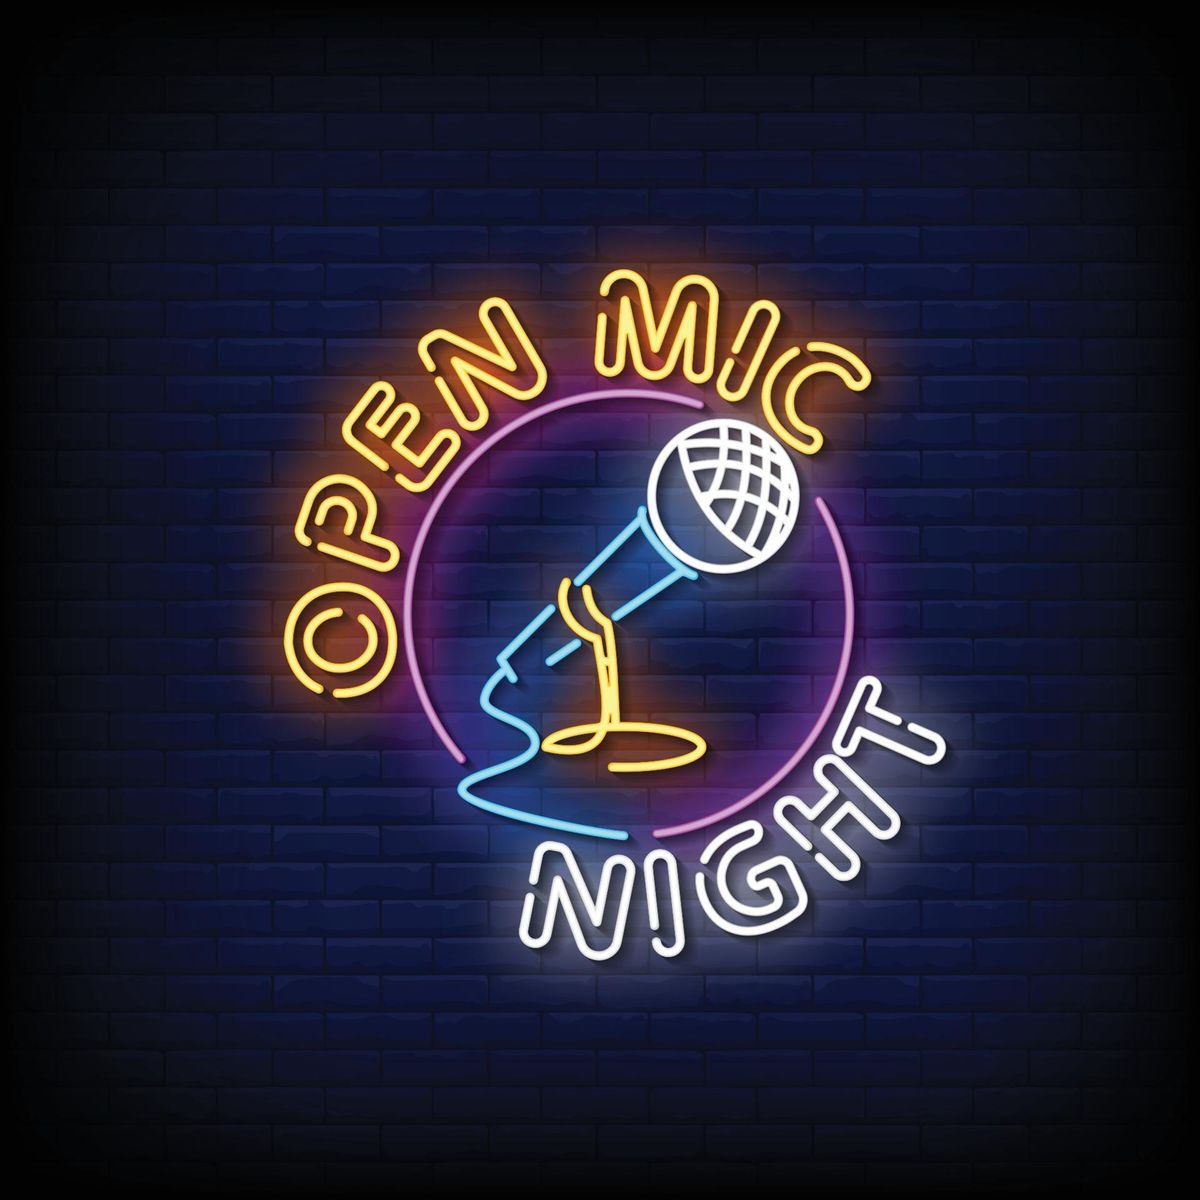 Open Mic Night--Every Monday!